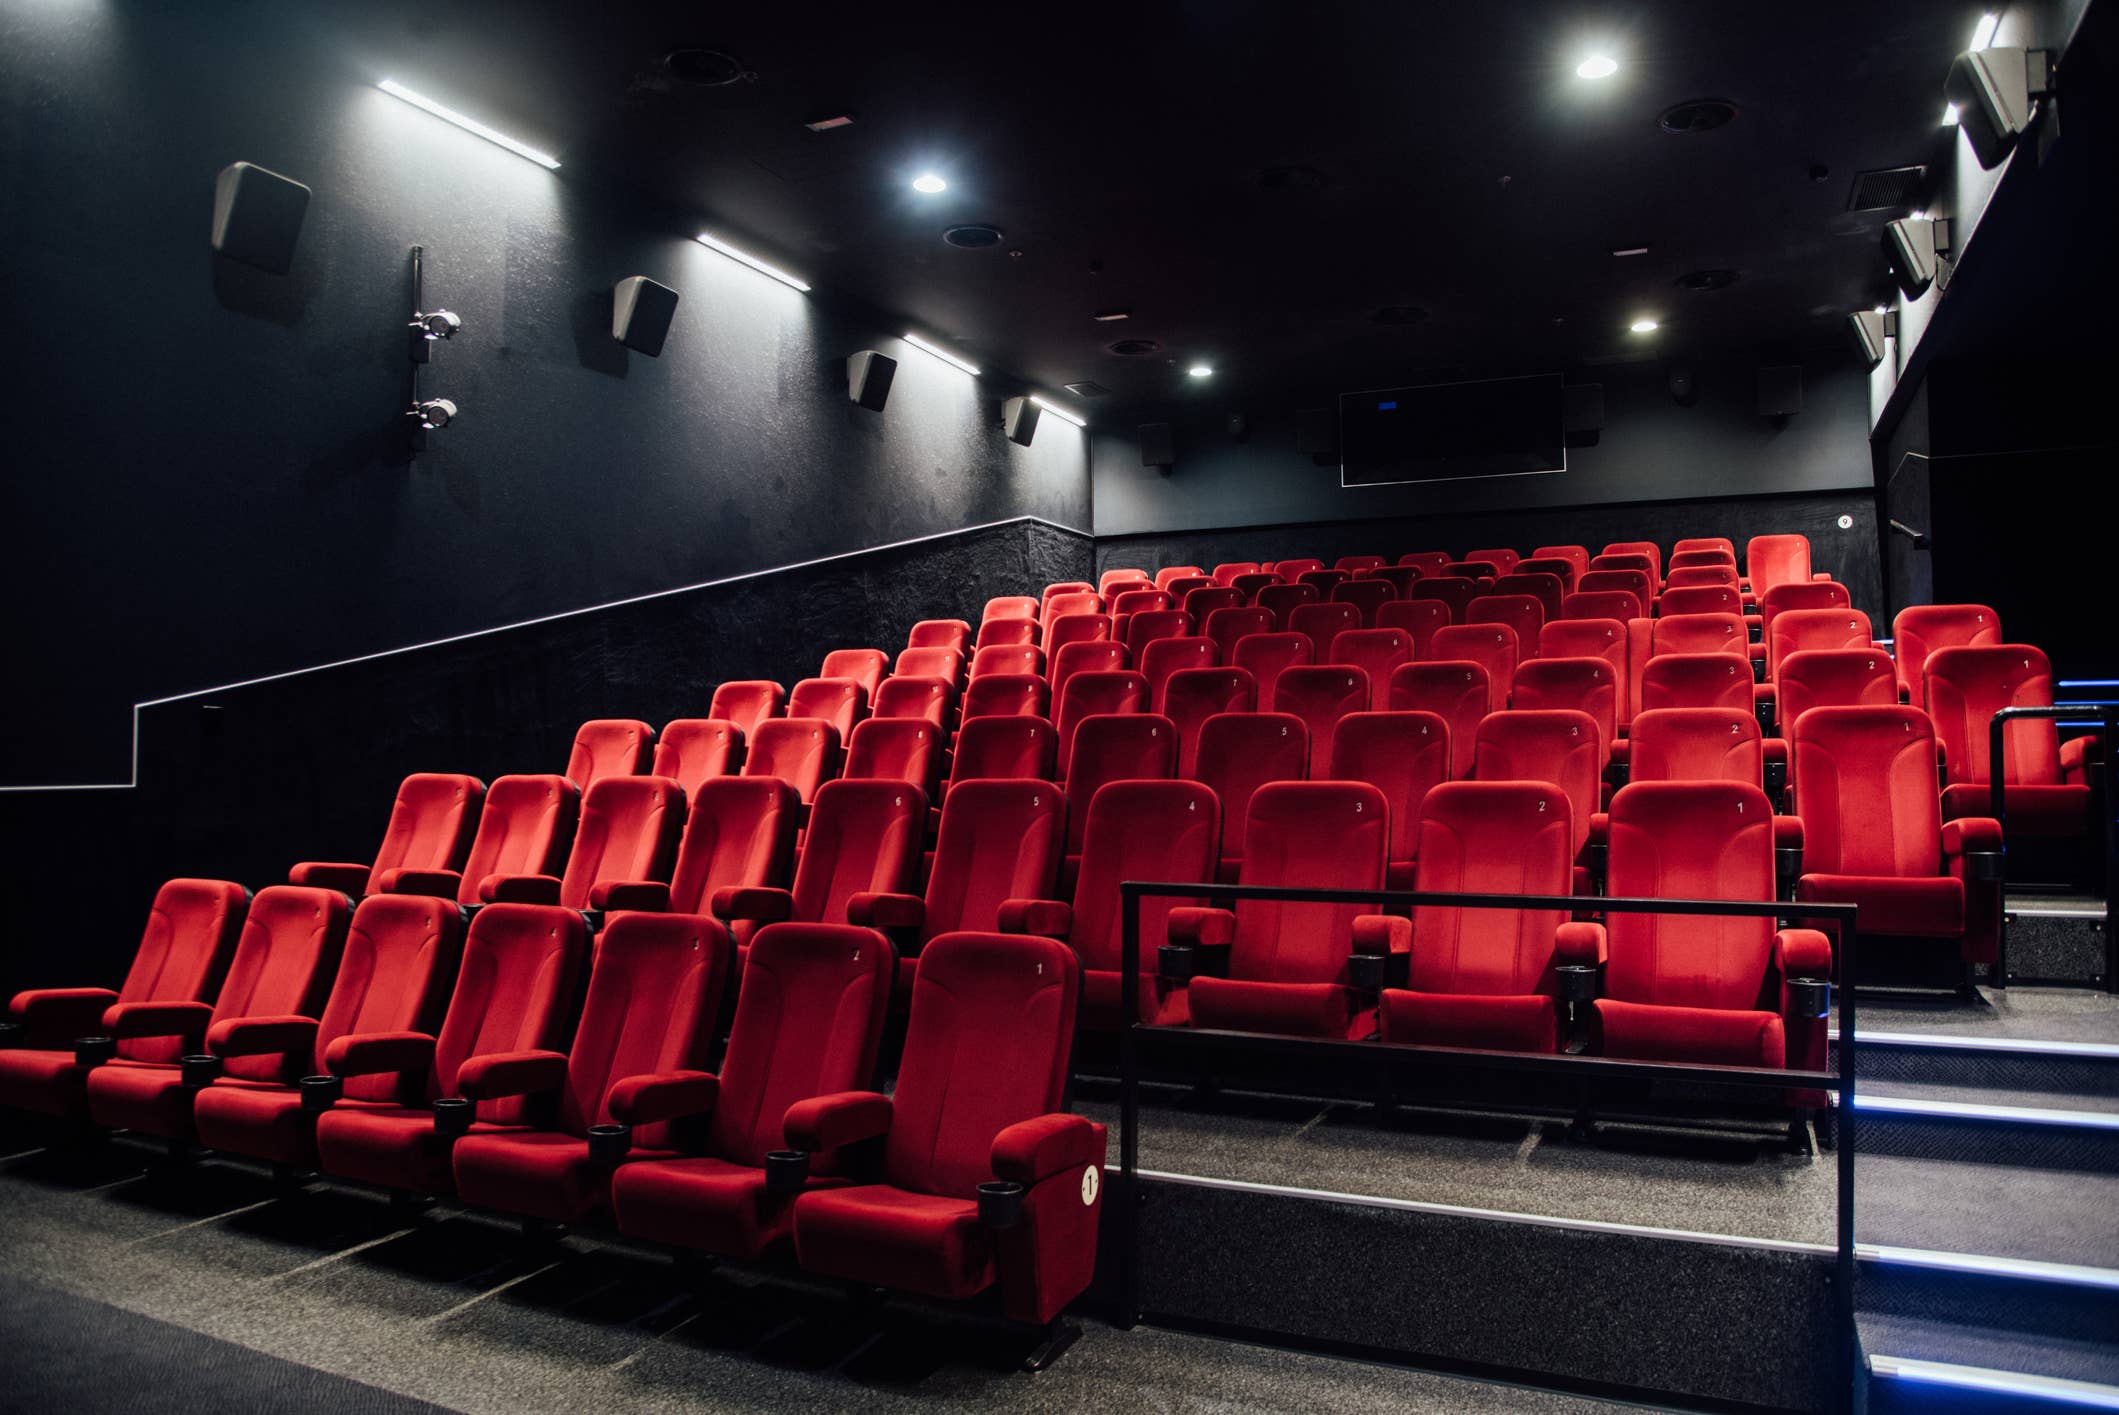 Киноафиша рядом со мной. Кинотеатр большой. Пустой кинотеатр с красными сиденьями. Красные кресла в кинотеатре. Ряд в кинотеатре пустой.